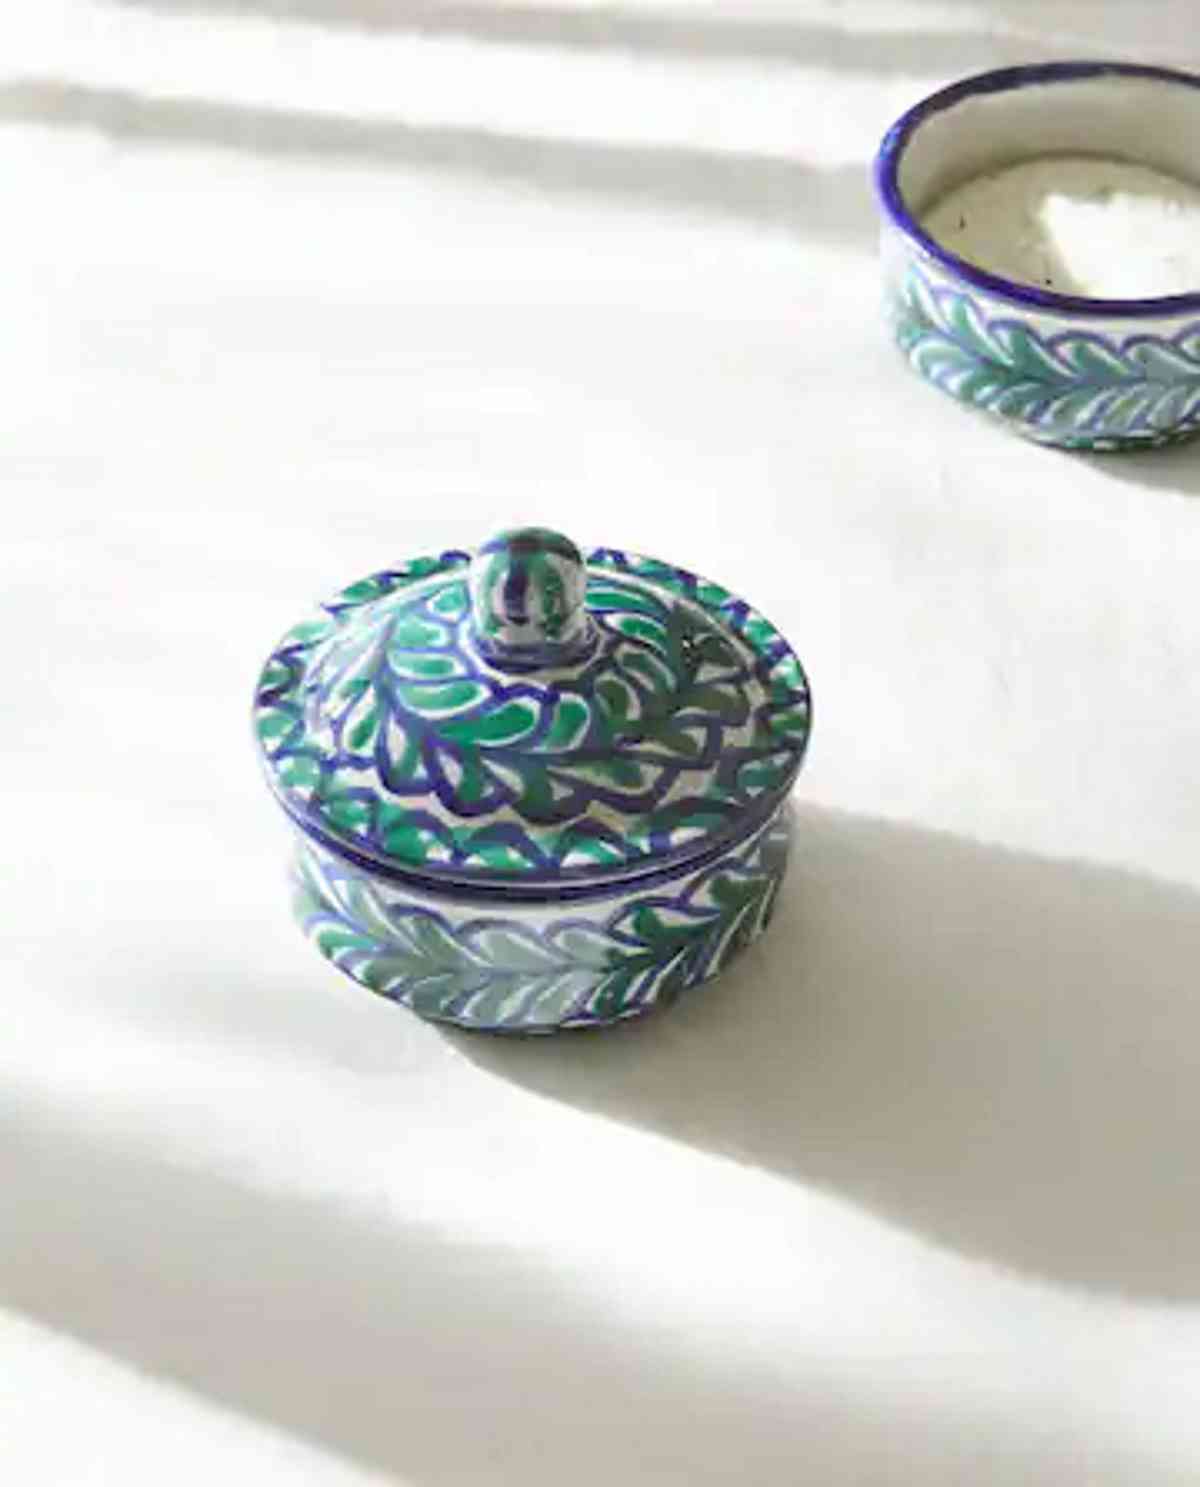 La cerámica de Fajalauza con Made by Artisans de Zara Home llevará tradición, belleza y luz a tu hogar 1